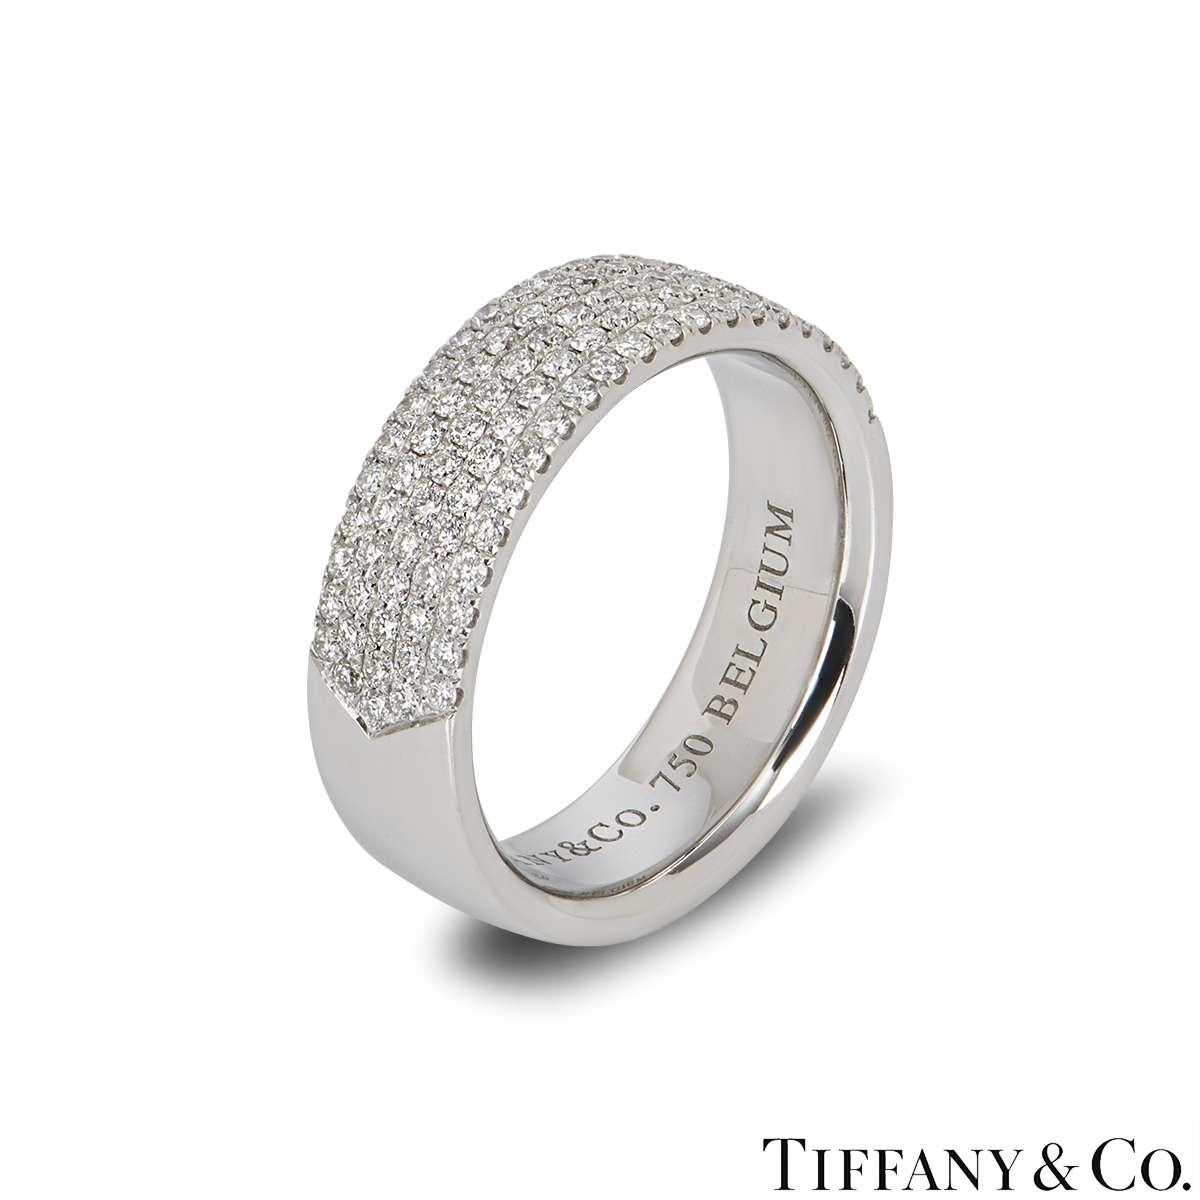 Eine schöne 18k Weißgold Tiffany & Co. Diamantband Ring. Der Ring besteht aus 5 Reihen runder Diamanten im Brillantschliff in der Mitte des Bandes mit einem Gesamtgewicht von 0,76 ct, Farbe G und Reinheit VS. Der Ring ist ein 6mm Gericht fit Stil